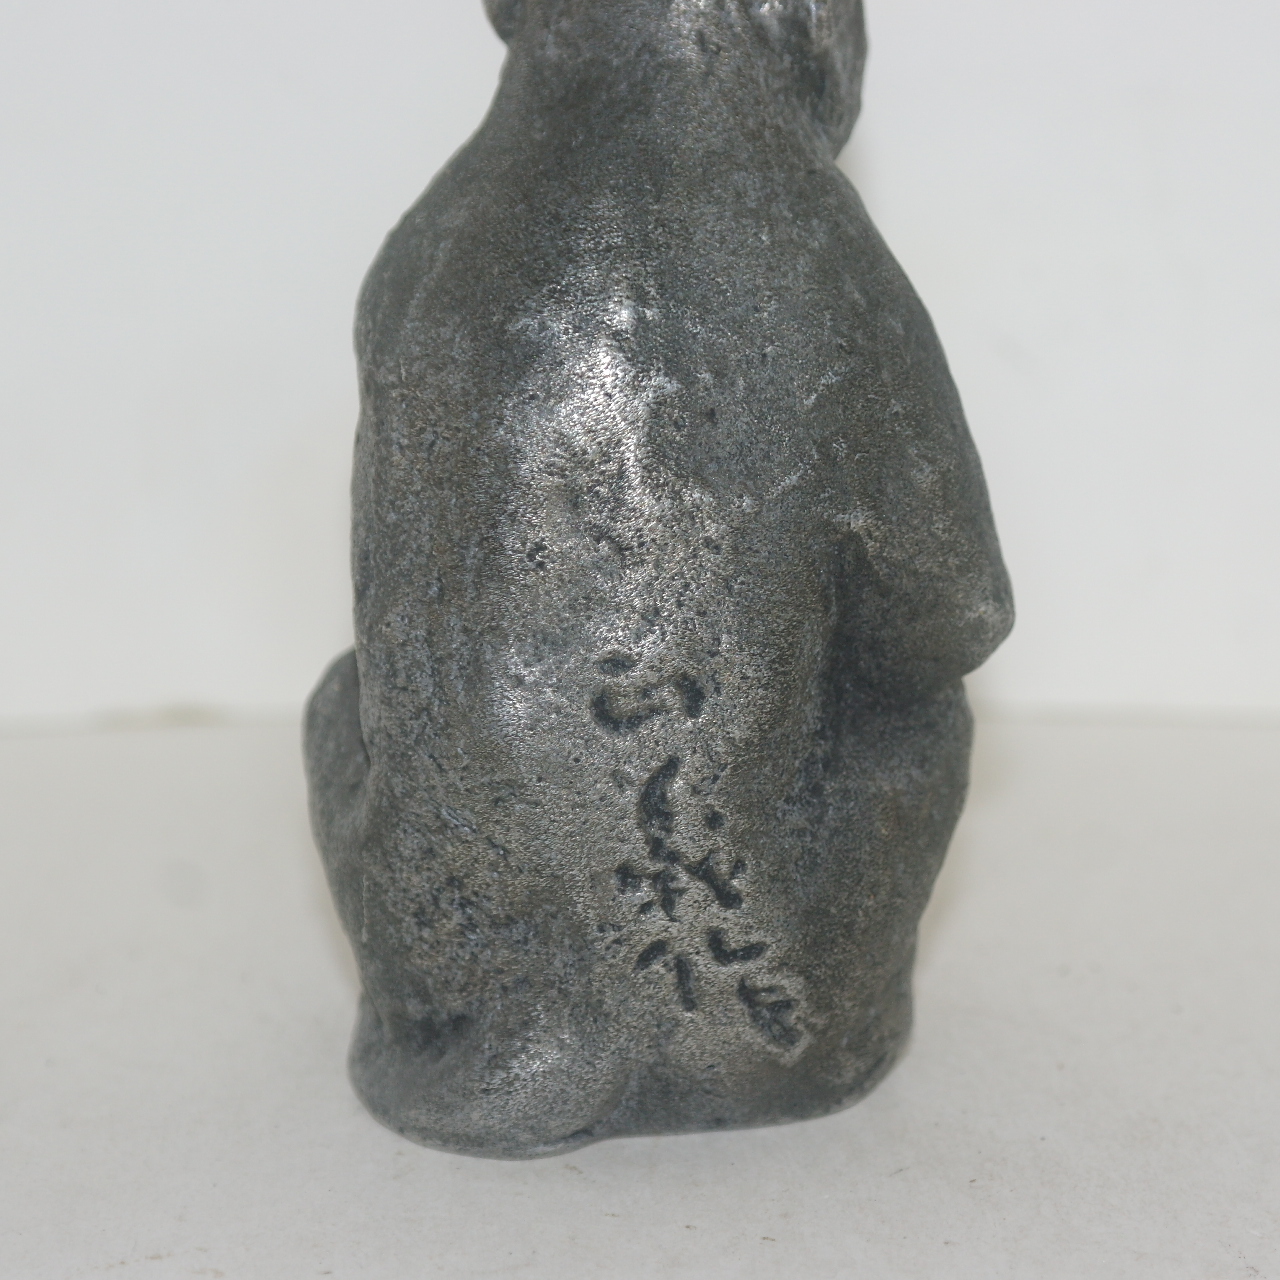 작가의 수결이 있는 금속합금재질로된 묵직한 원숭이 조각상